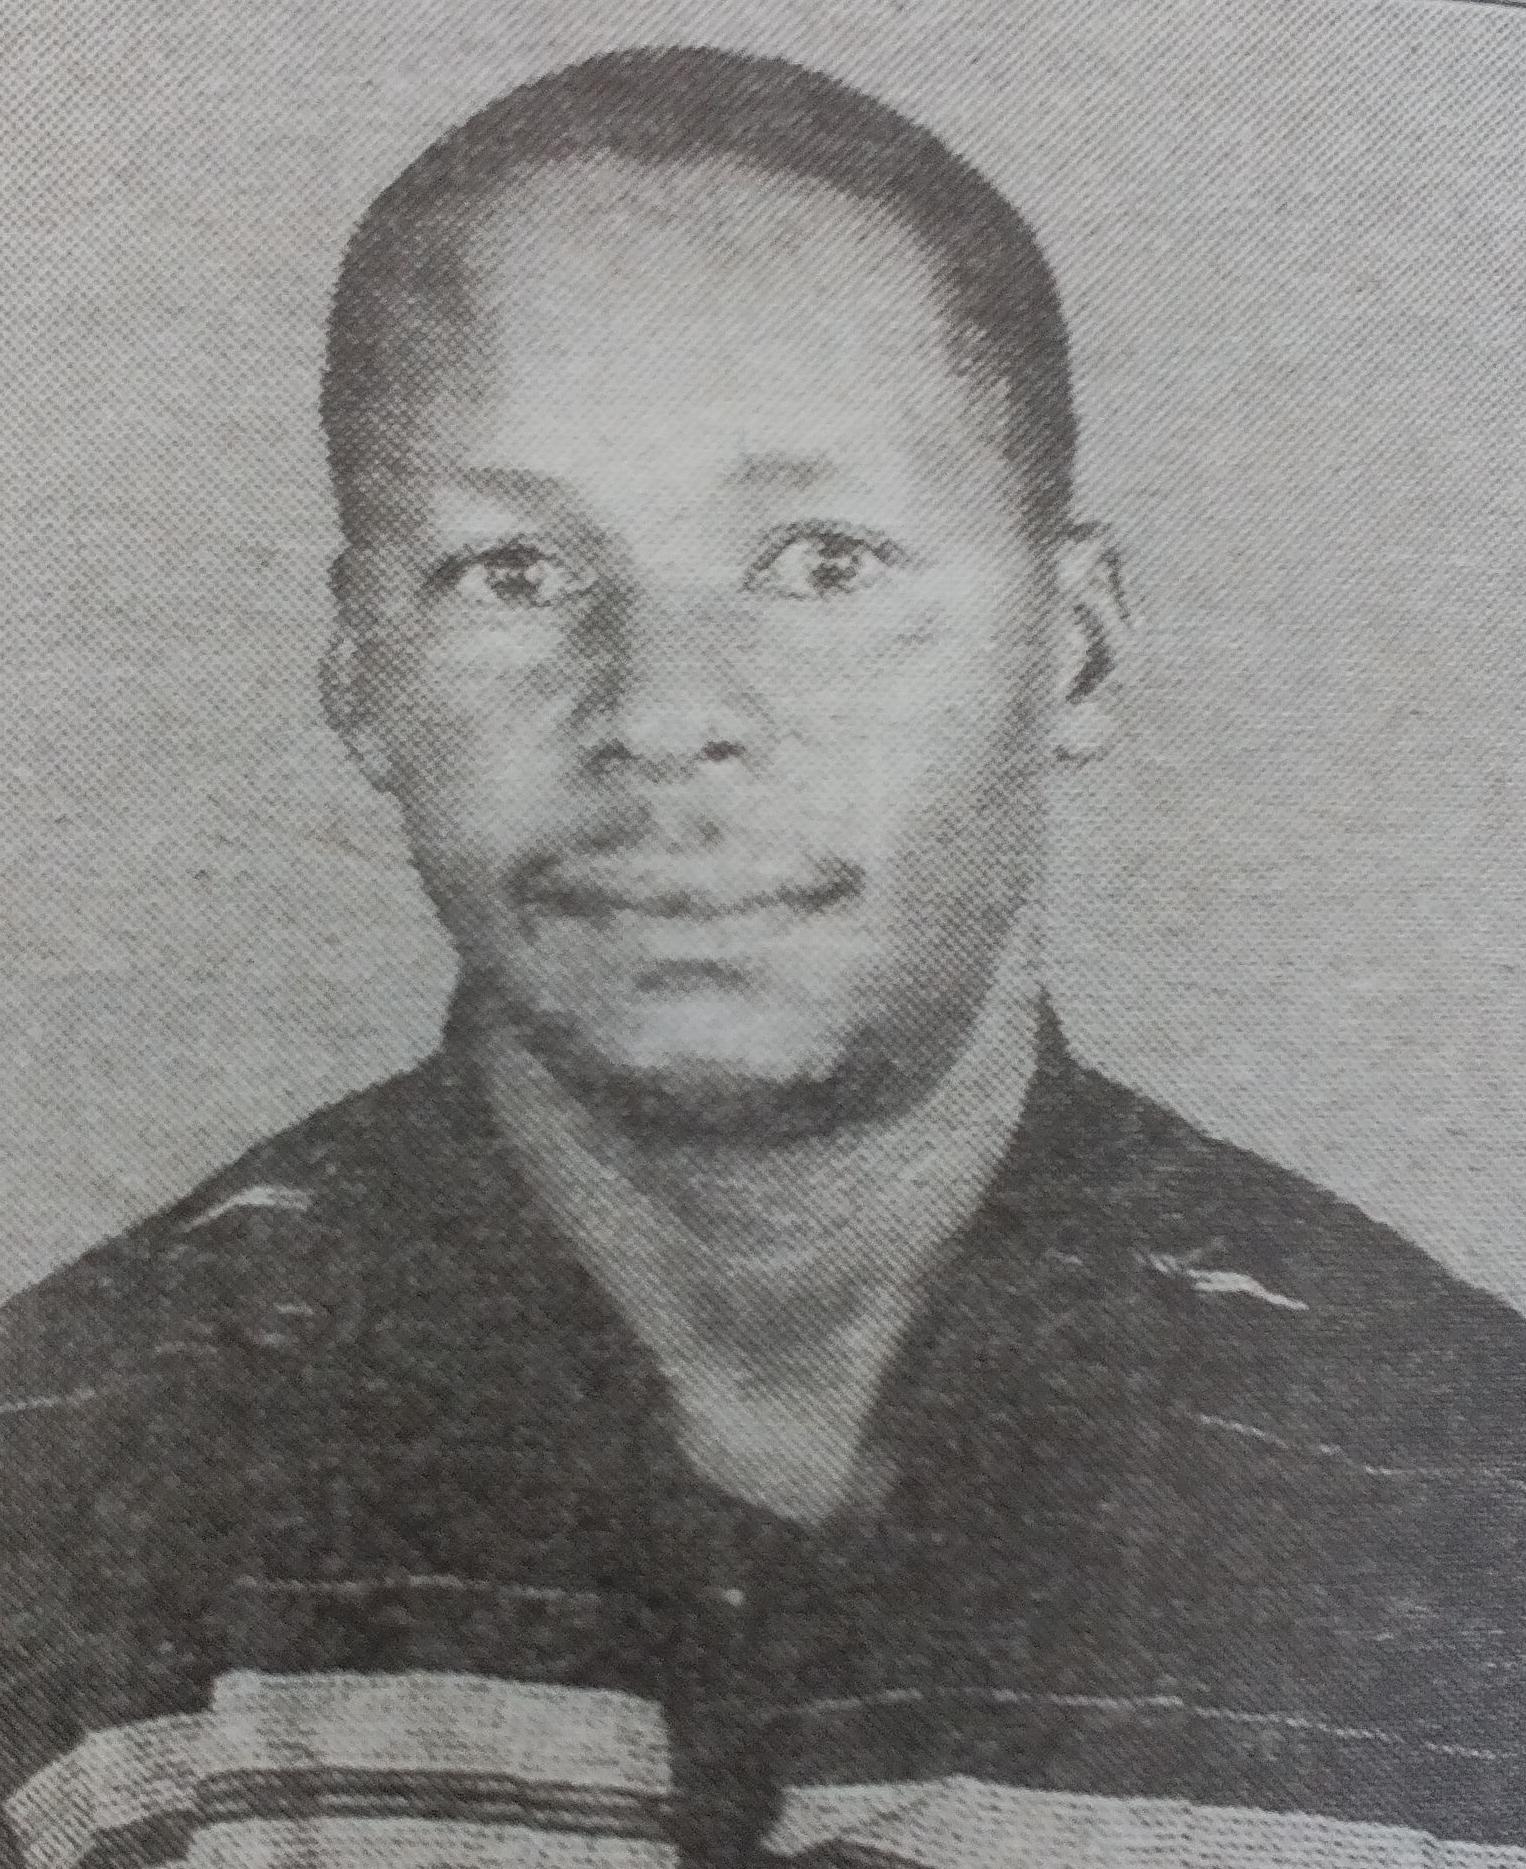 Obituary Image of Simon Maina (Musimo) aka Richman